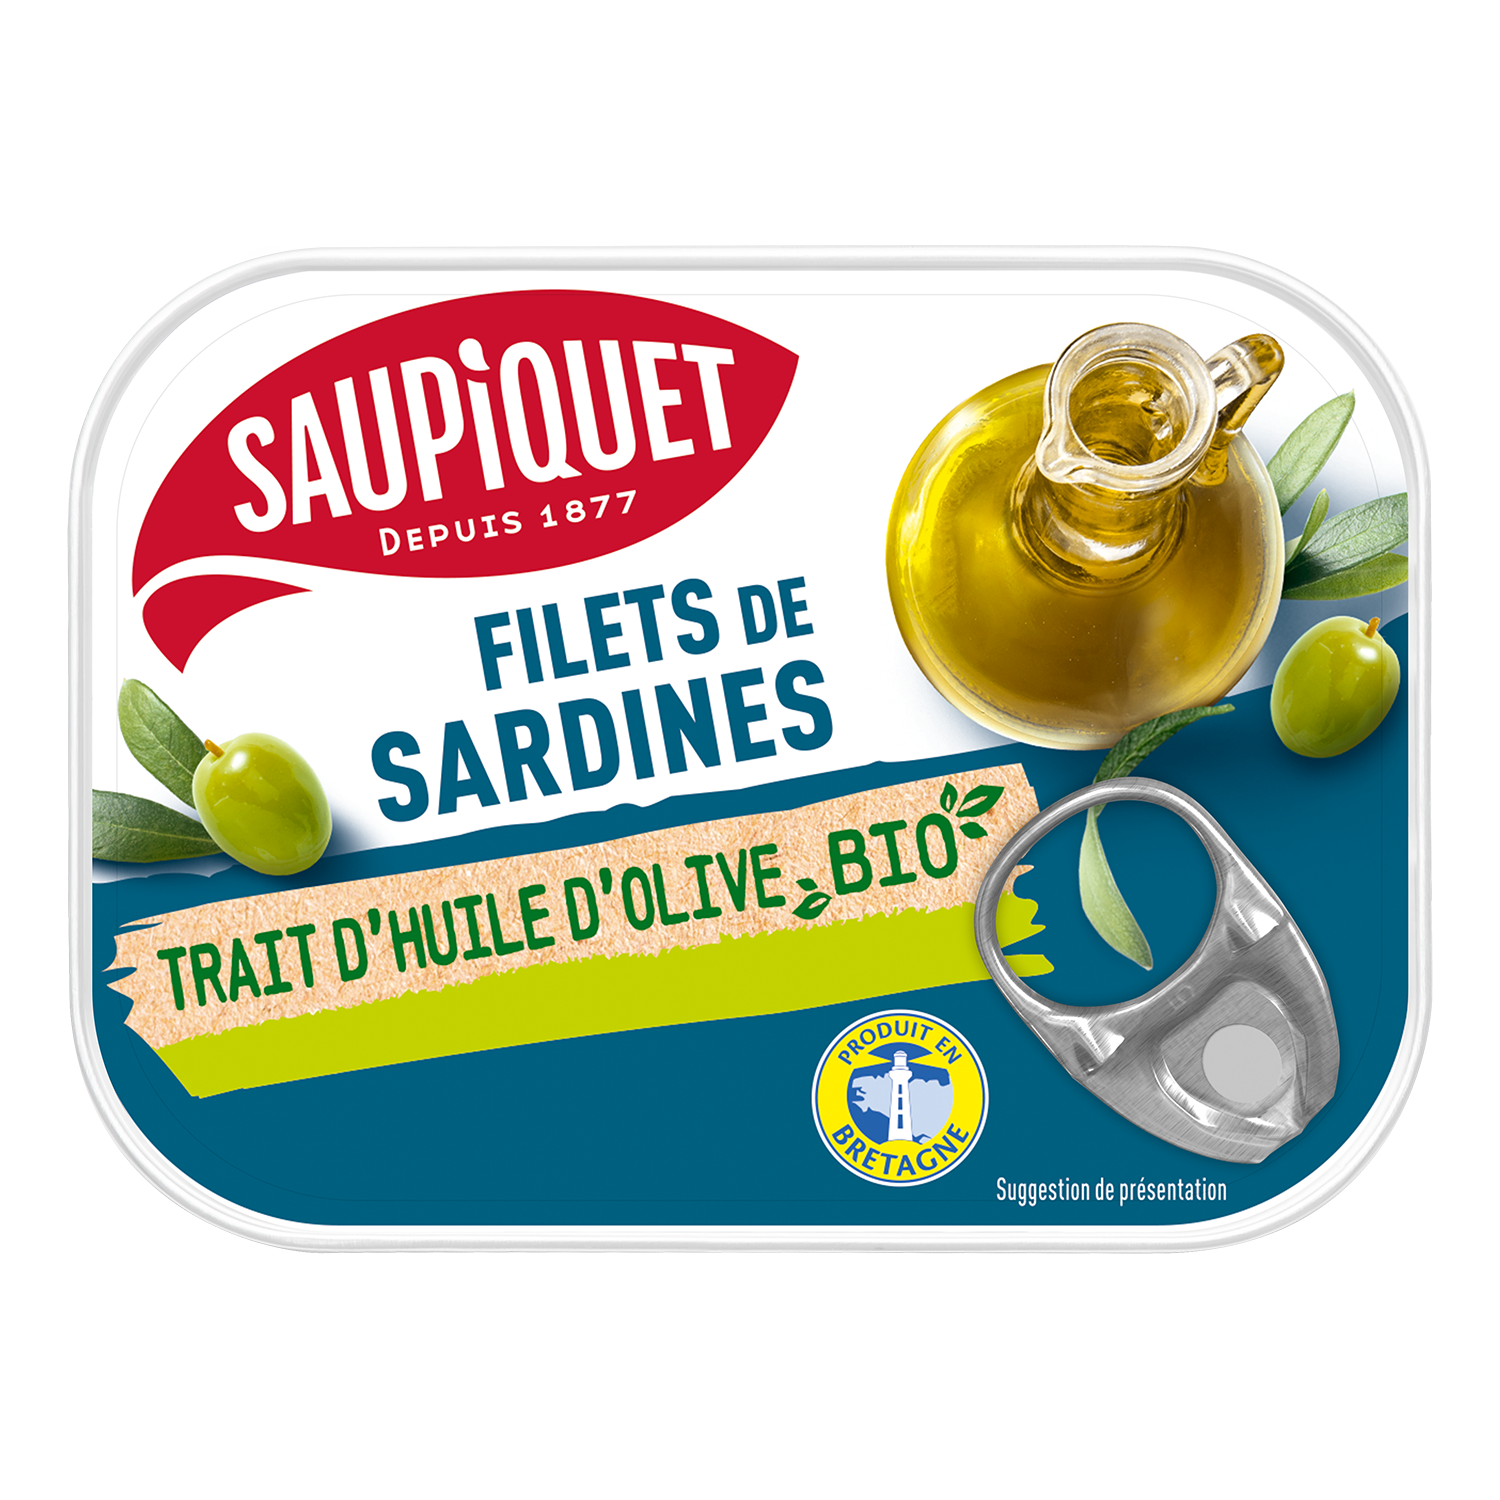 Filets de sardines trait d'huile d'olive Bio